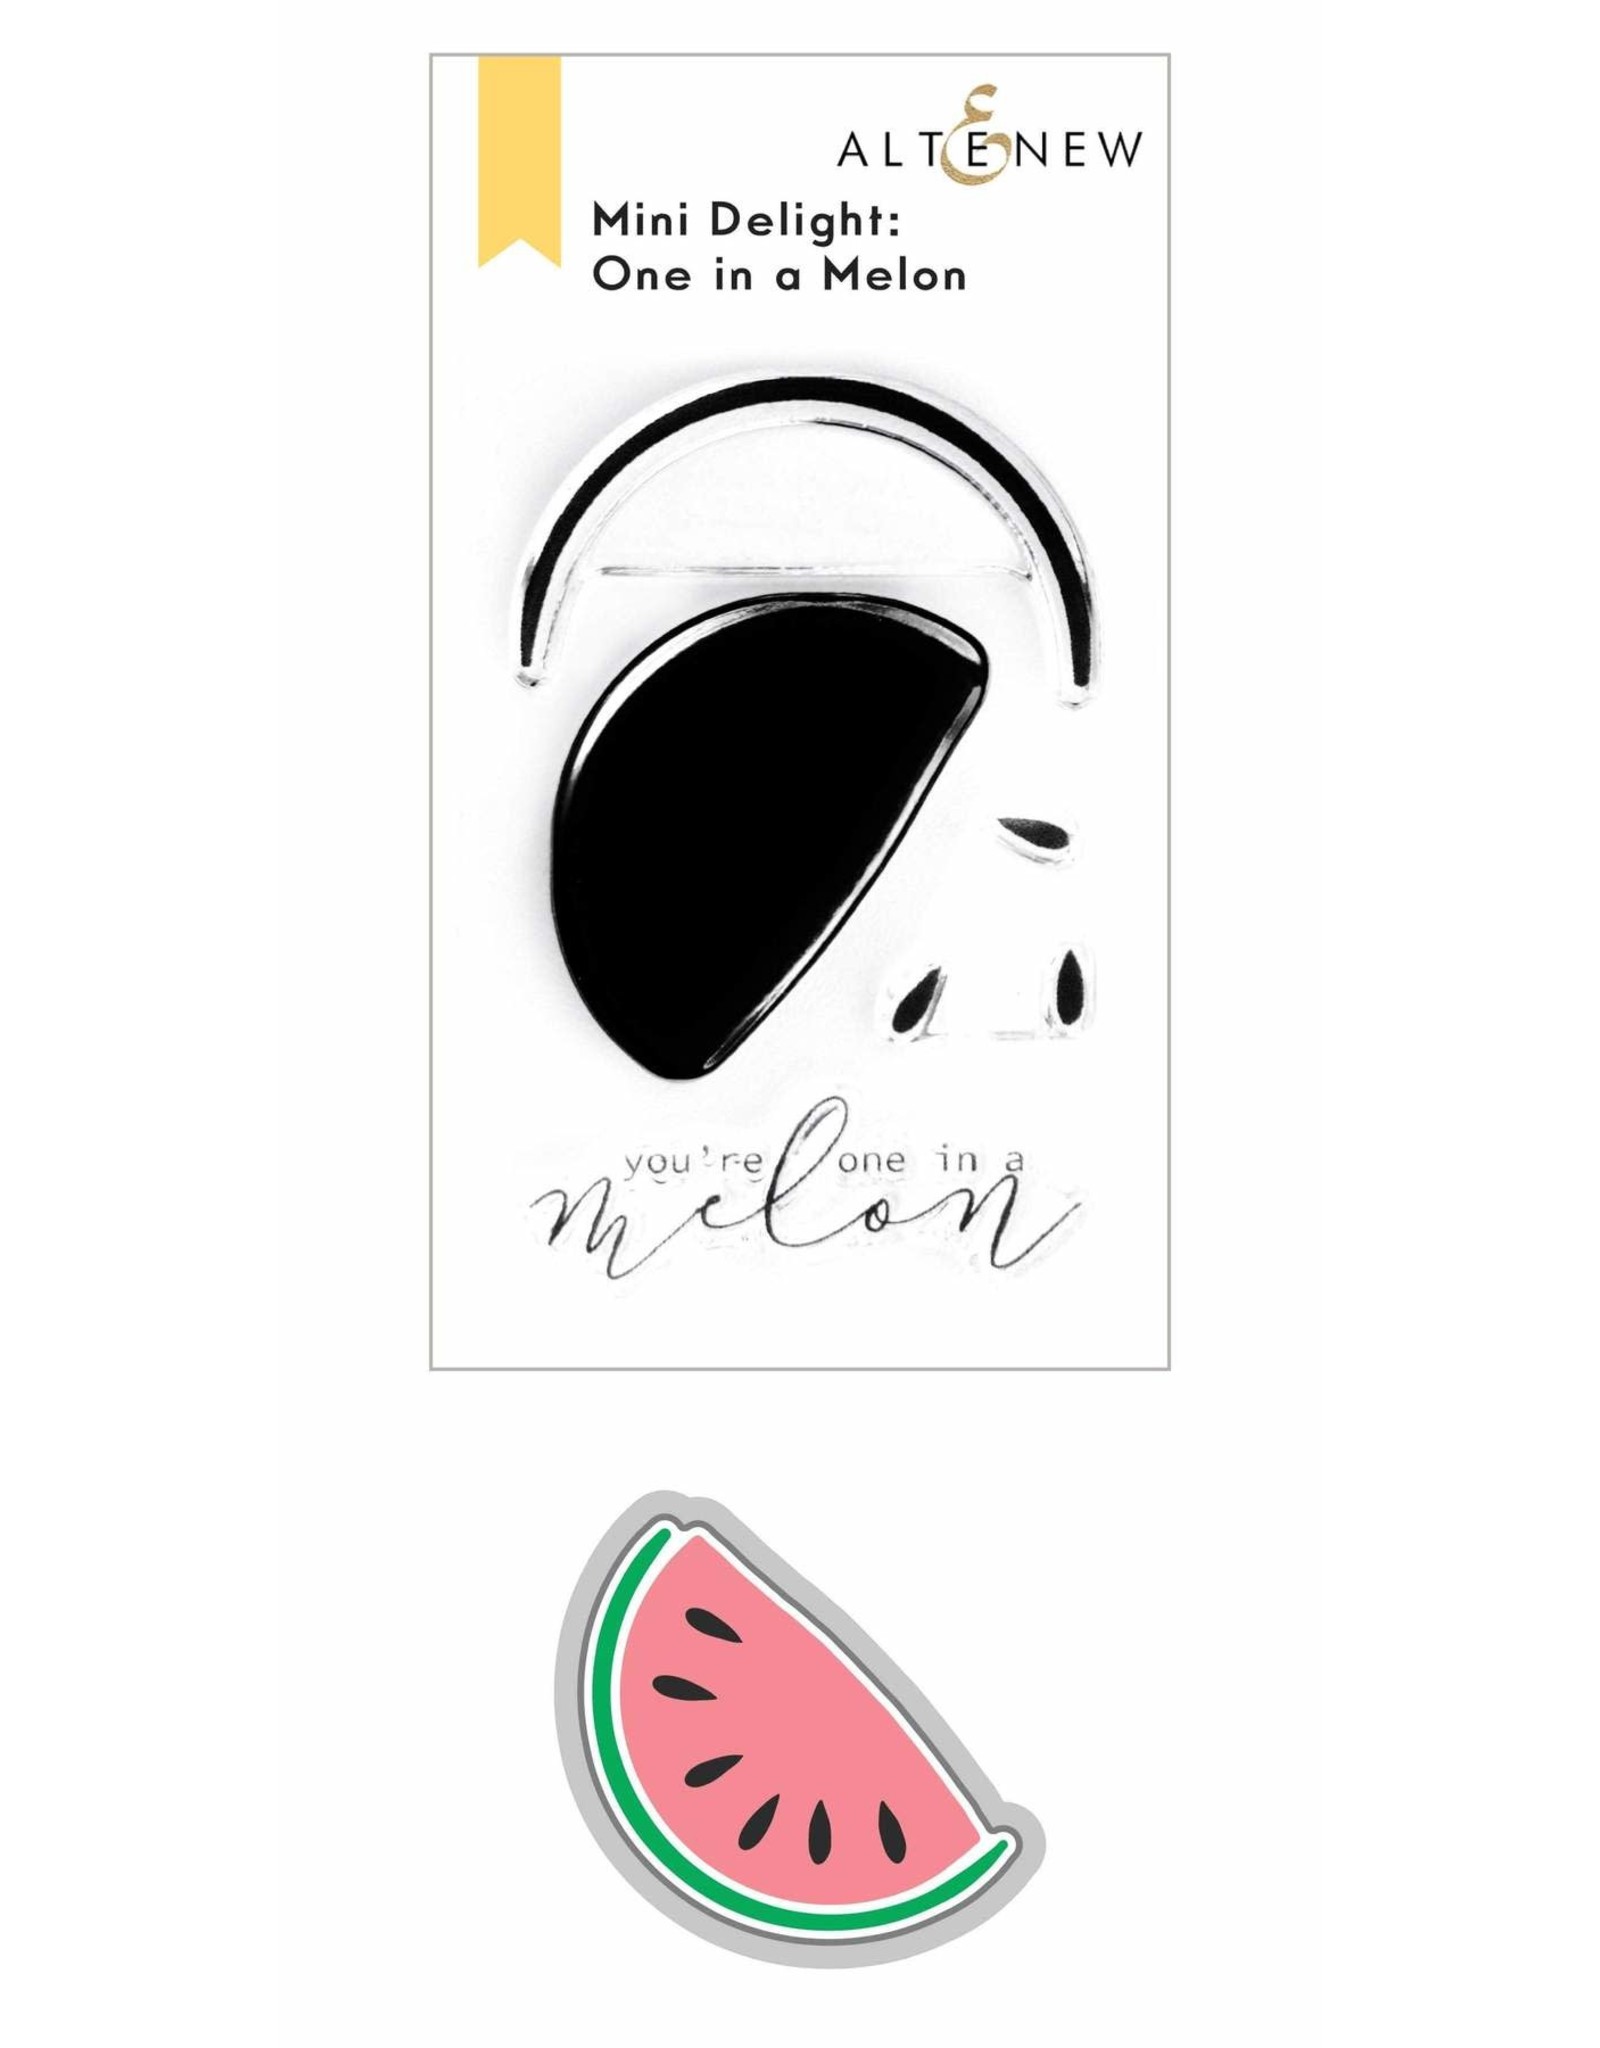 ALTENEW Mini Delight: One in a Melon Stamp & Die Set